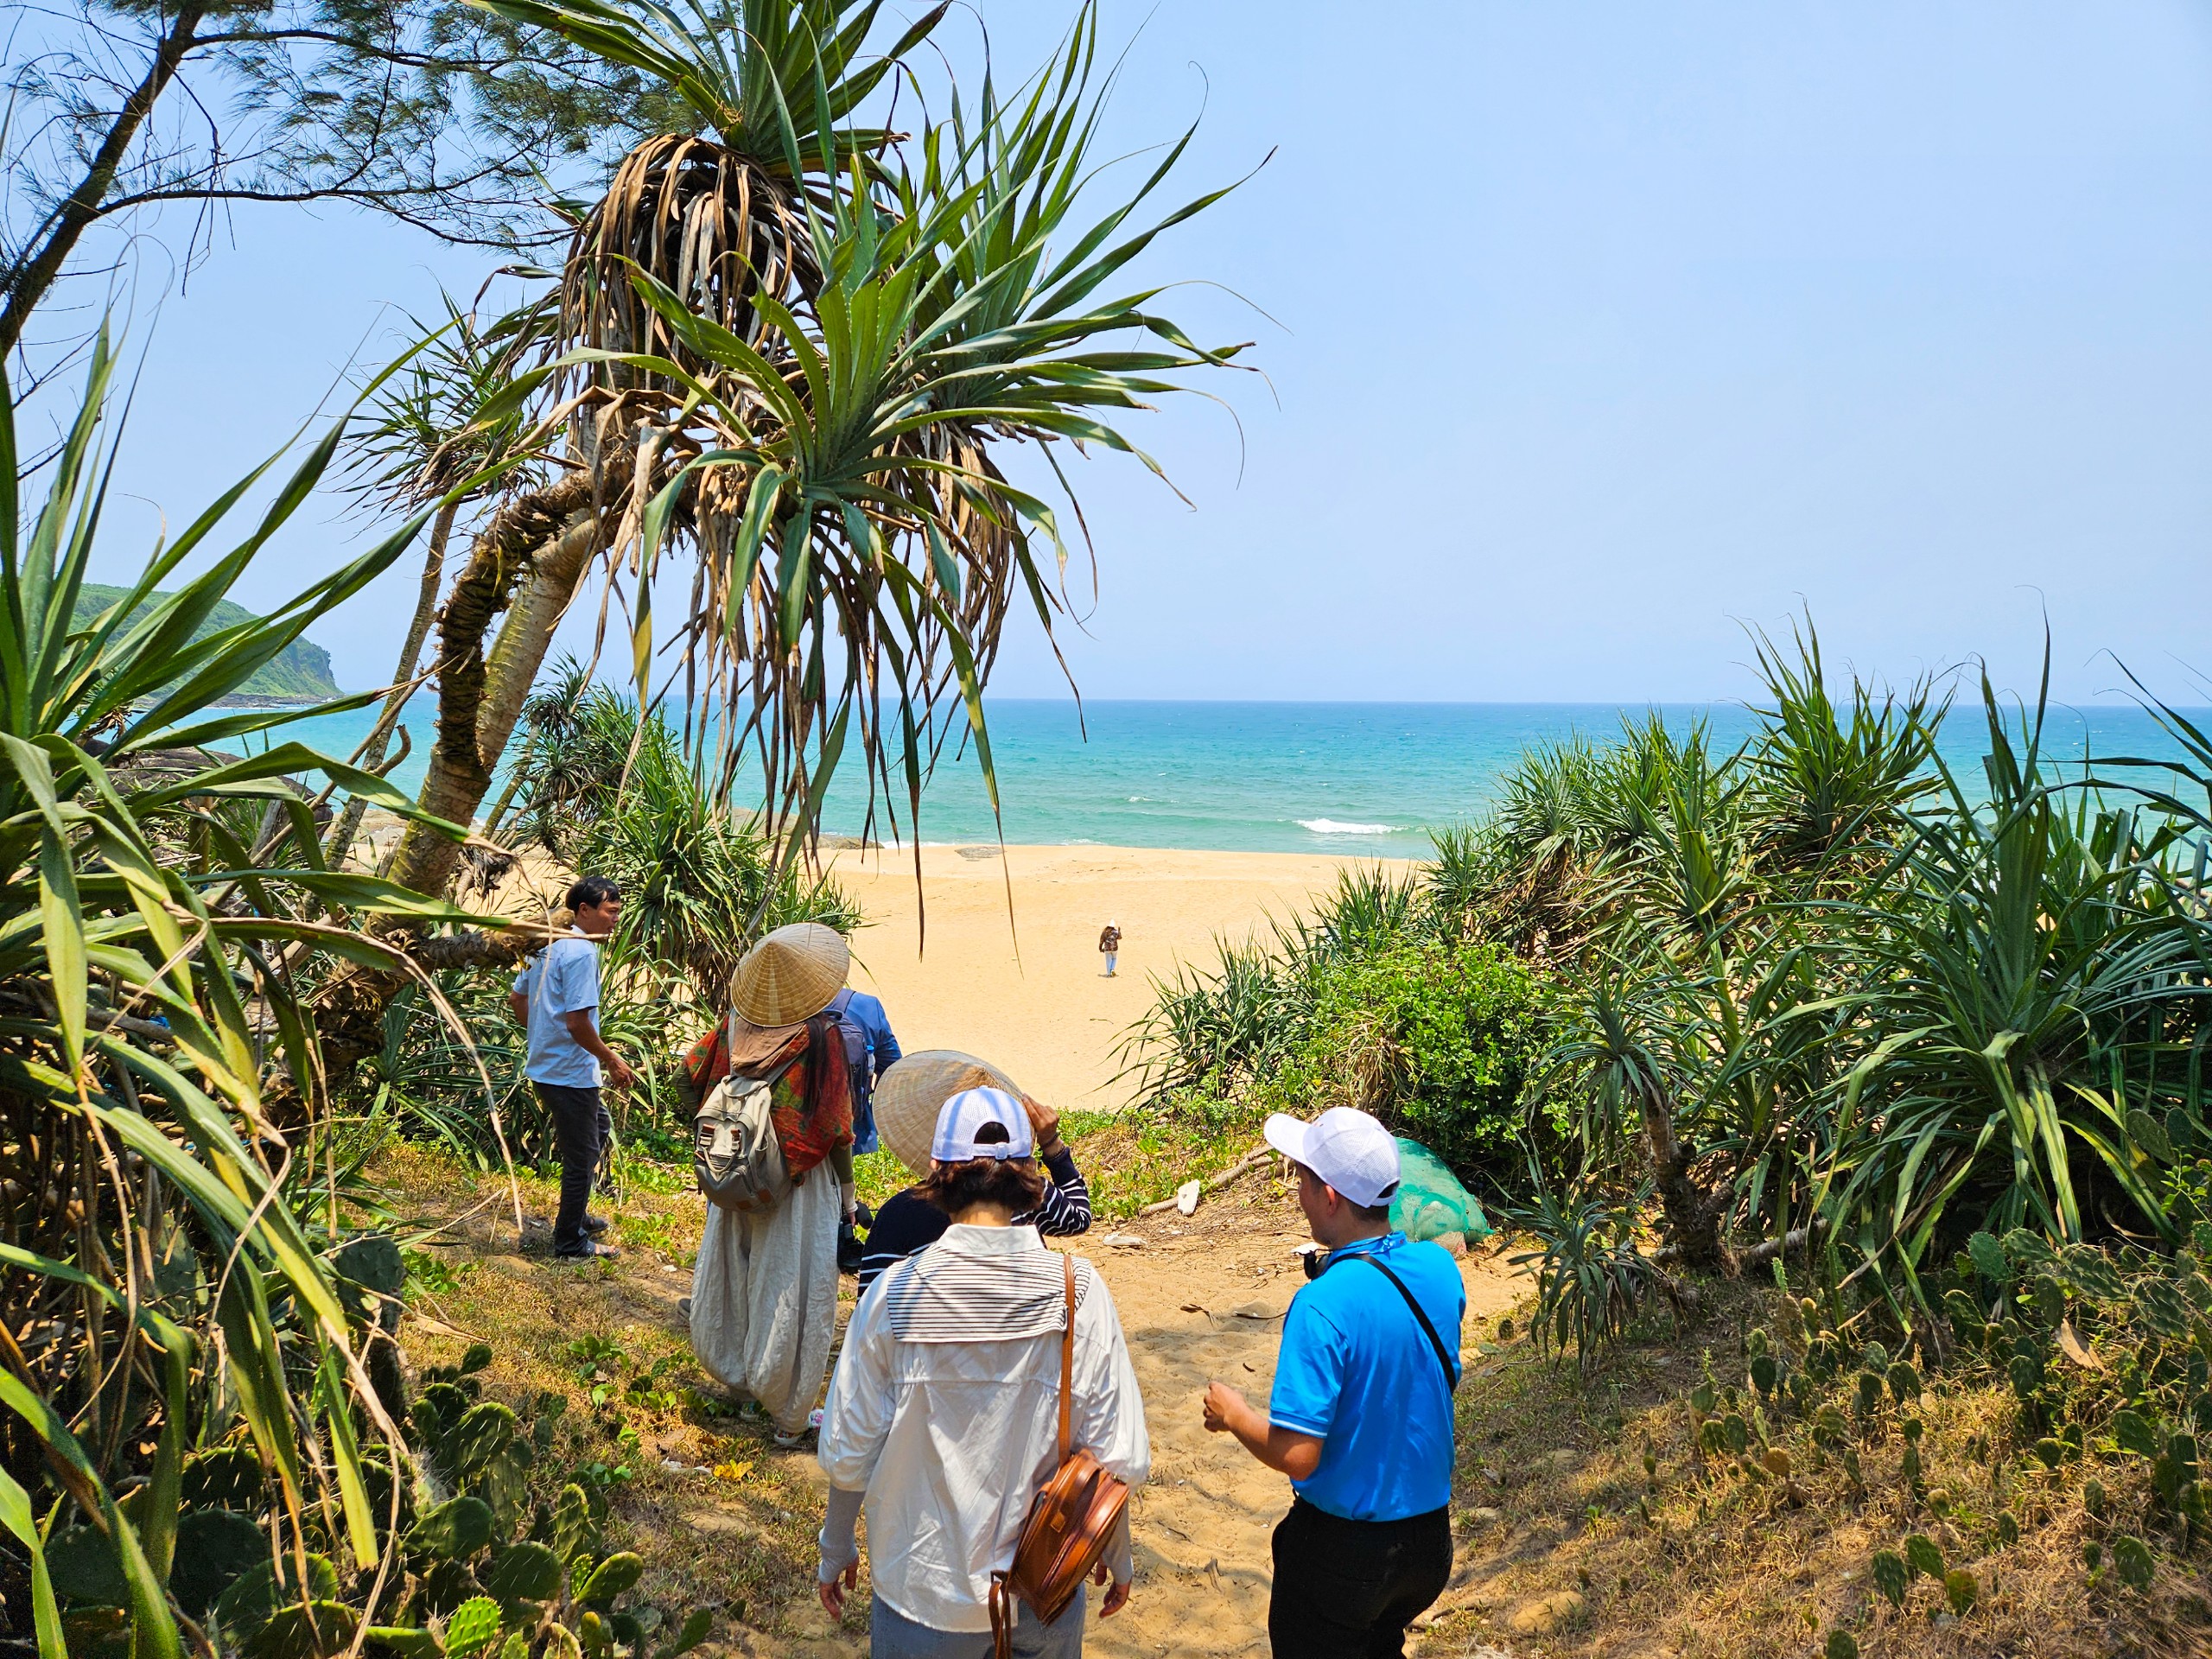 Đoàn đến tham quan bãi biển Hòn Cóc thuộc vịnh Dung Quất, xã Bình Thuận, huyện Bình Sơn – Nơi còn giữ nguyên vẻ đẹp hoang sơ, với bãi cát vàng và làn nước biển trong xanh biếc